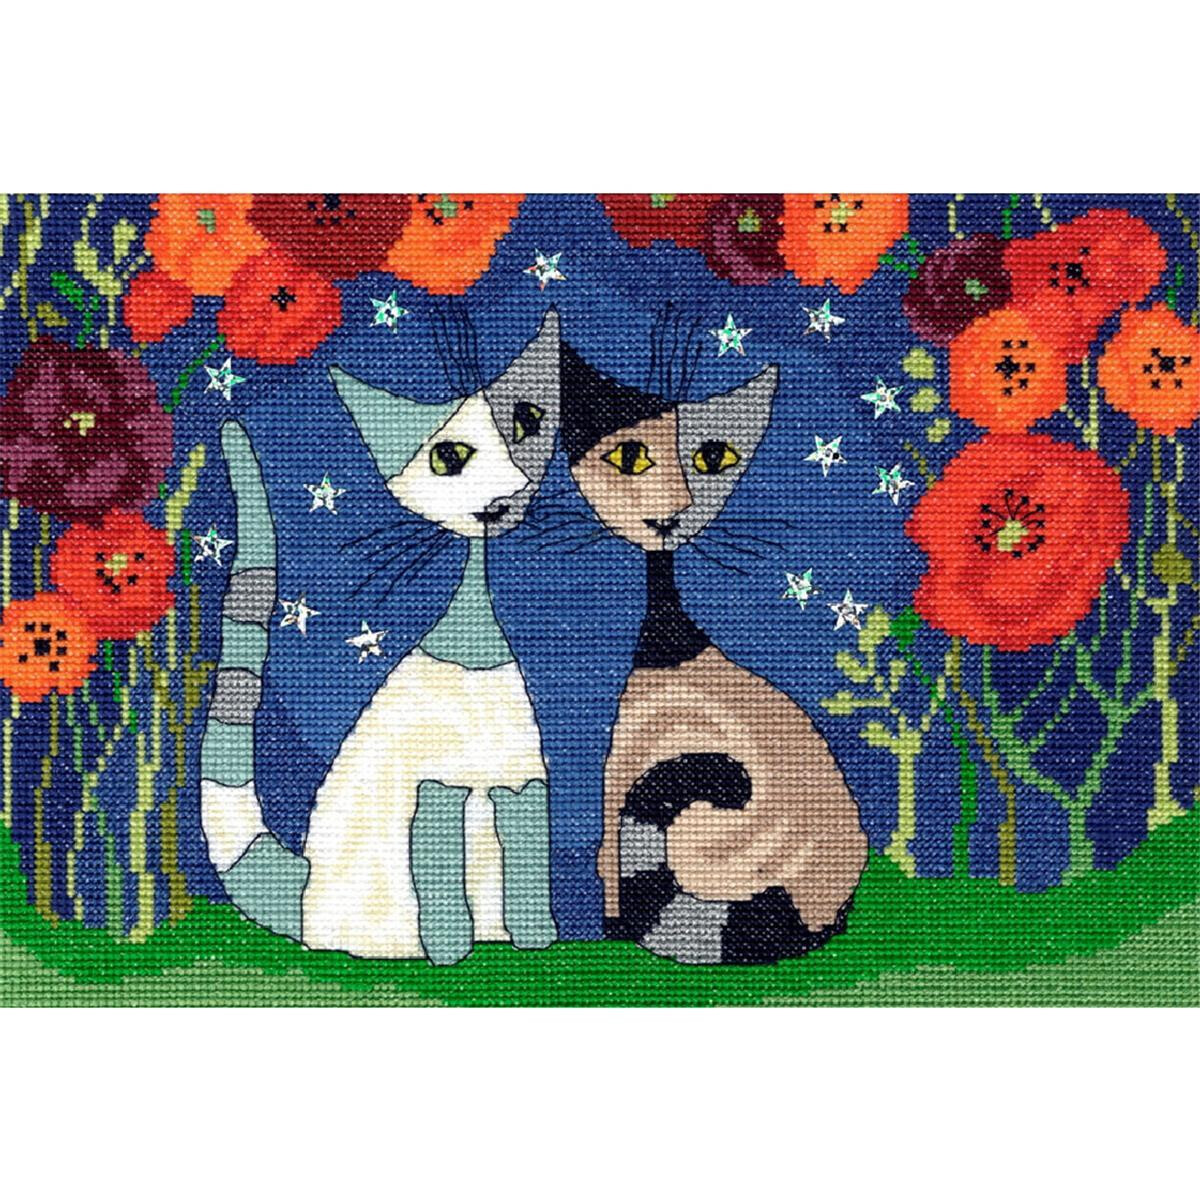 Un dipinto colorato e stravagante di due gatti seduti...